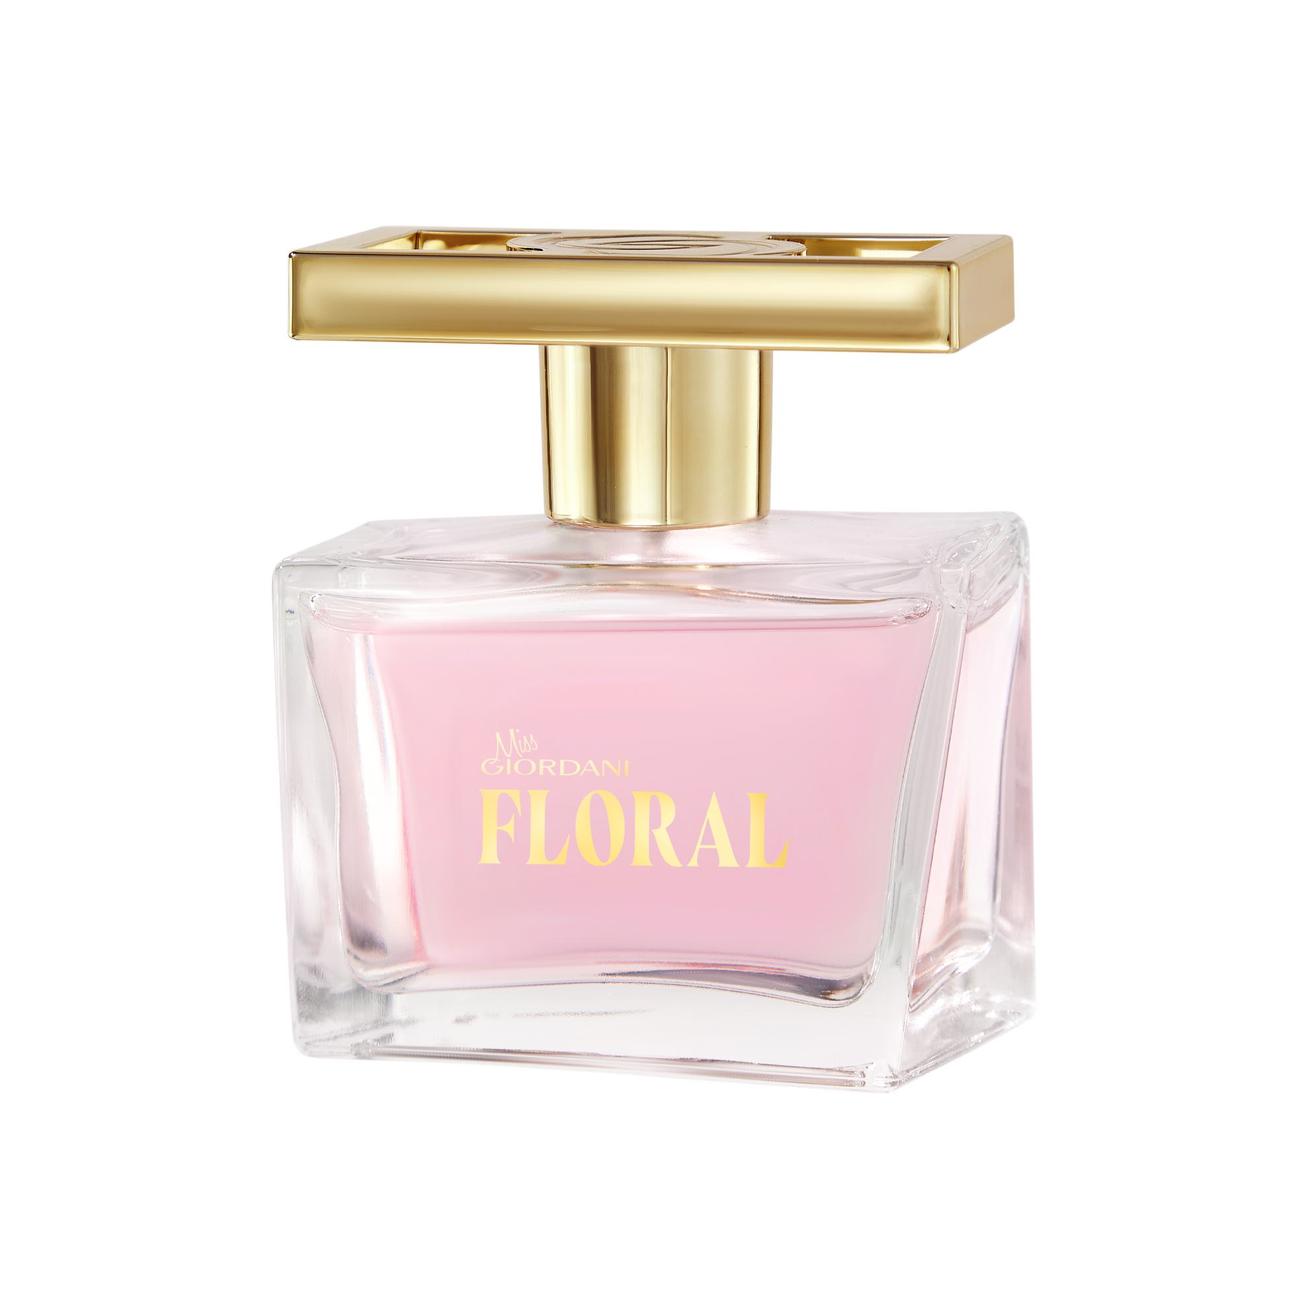 Oferta de Eau de Parfum Miss Giordani Floral por 28,99€ en Oriflame